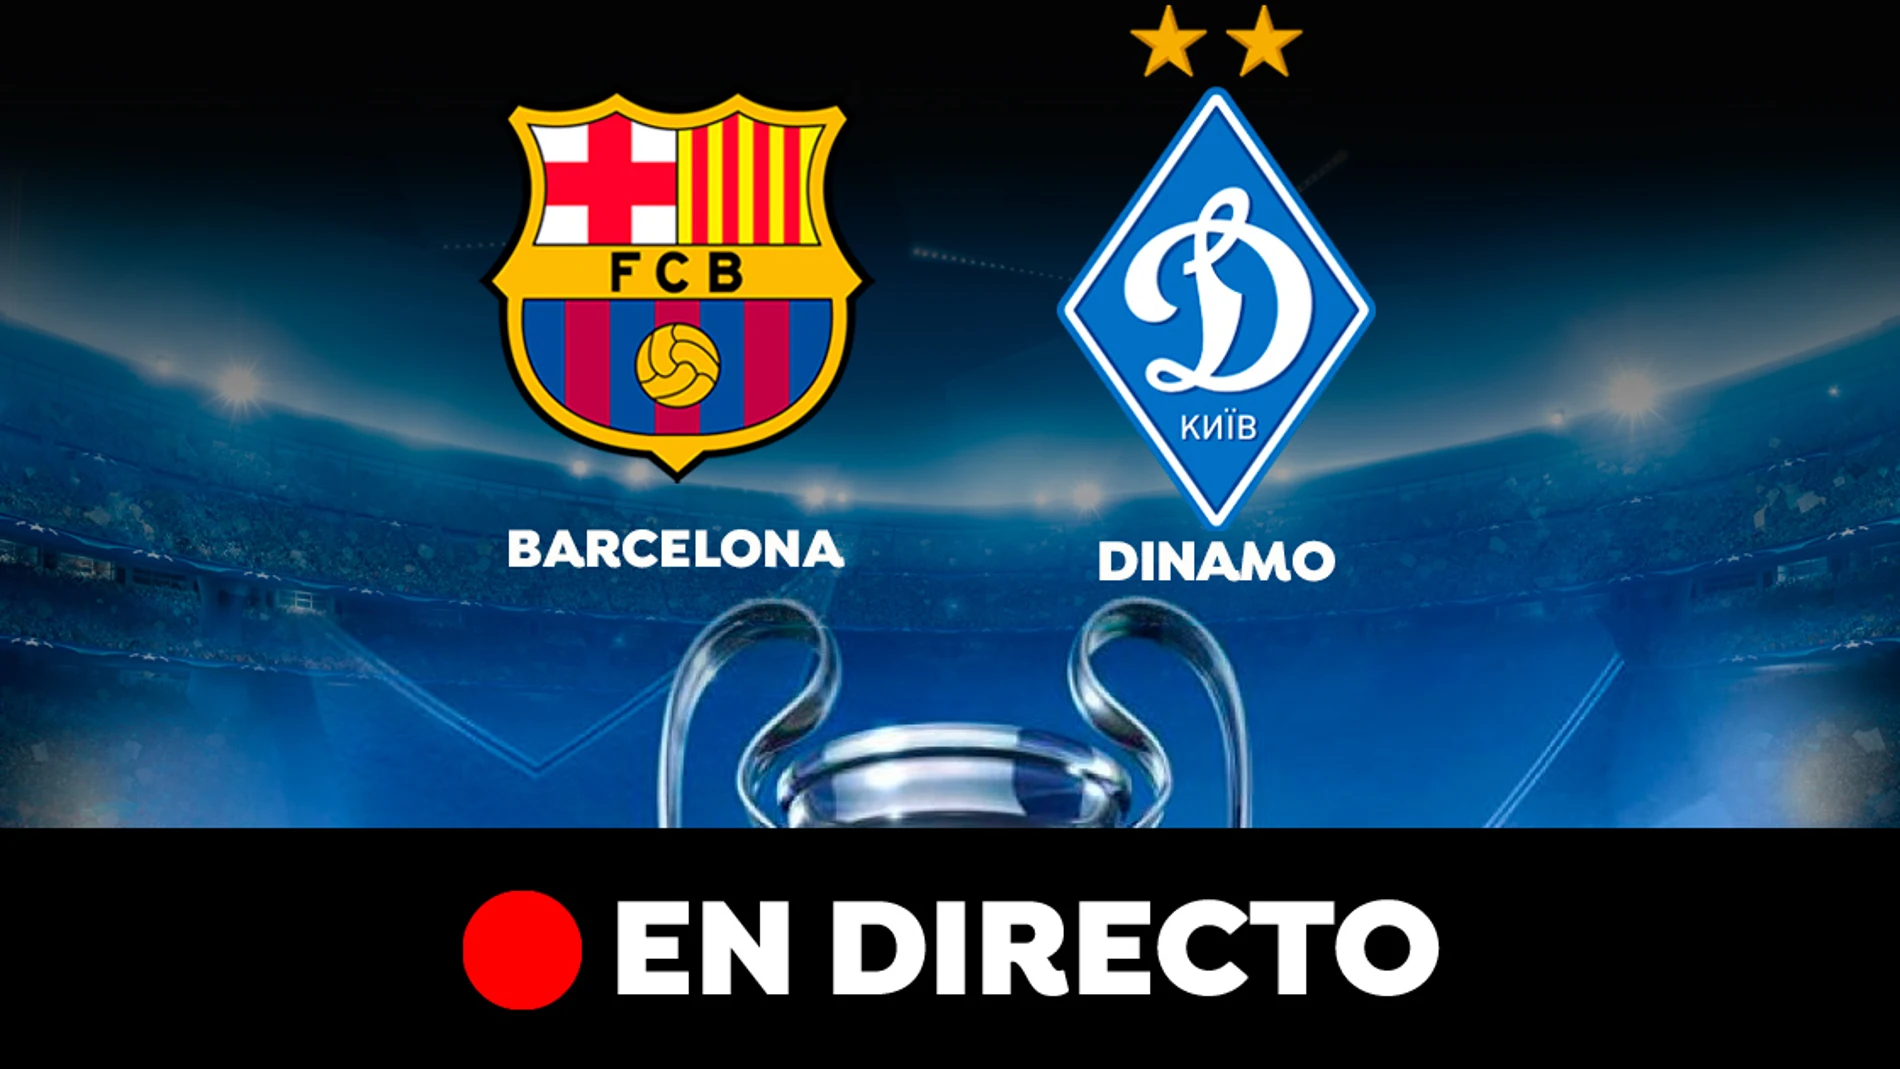 Barcelona - Dinamo: Resultado, resumen de la Champions League, en directo